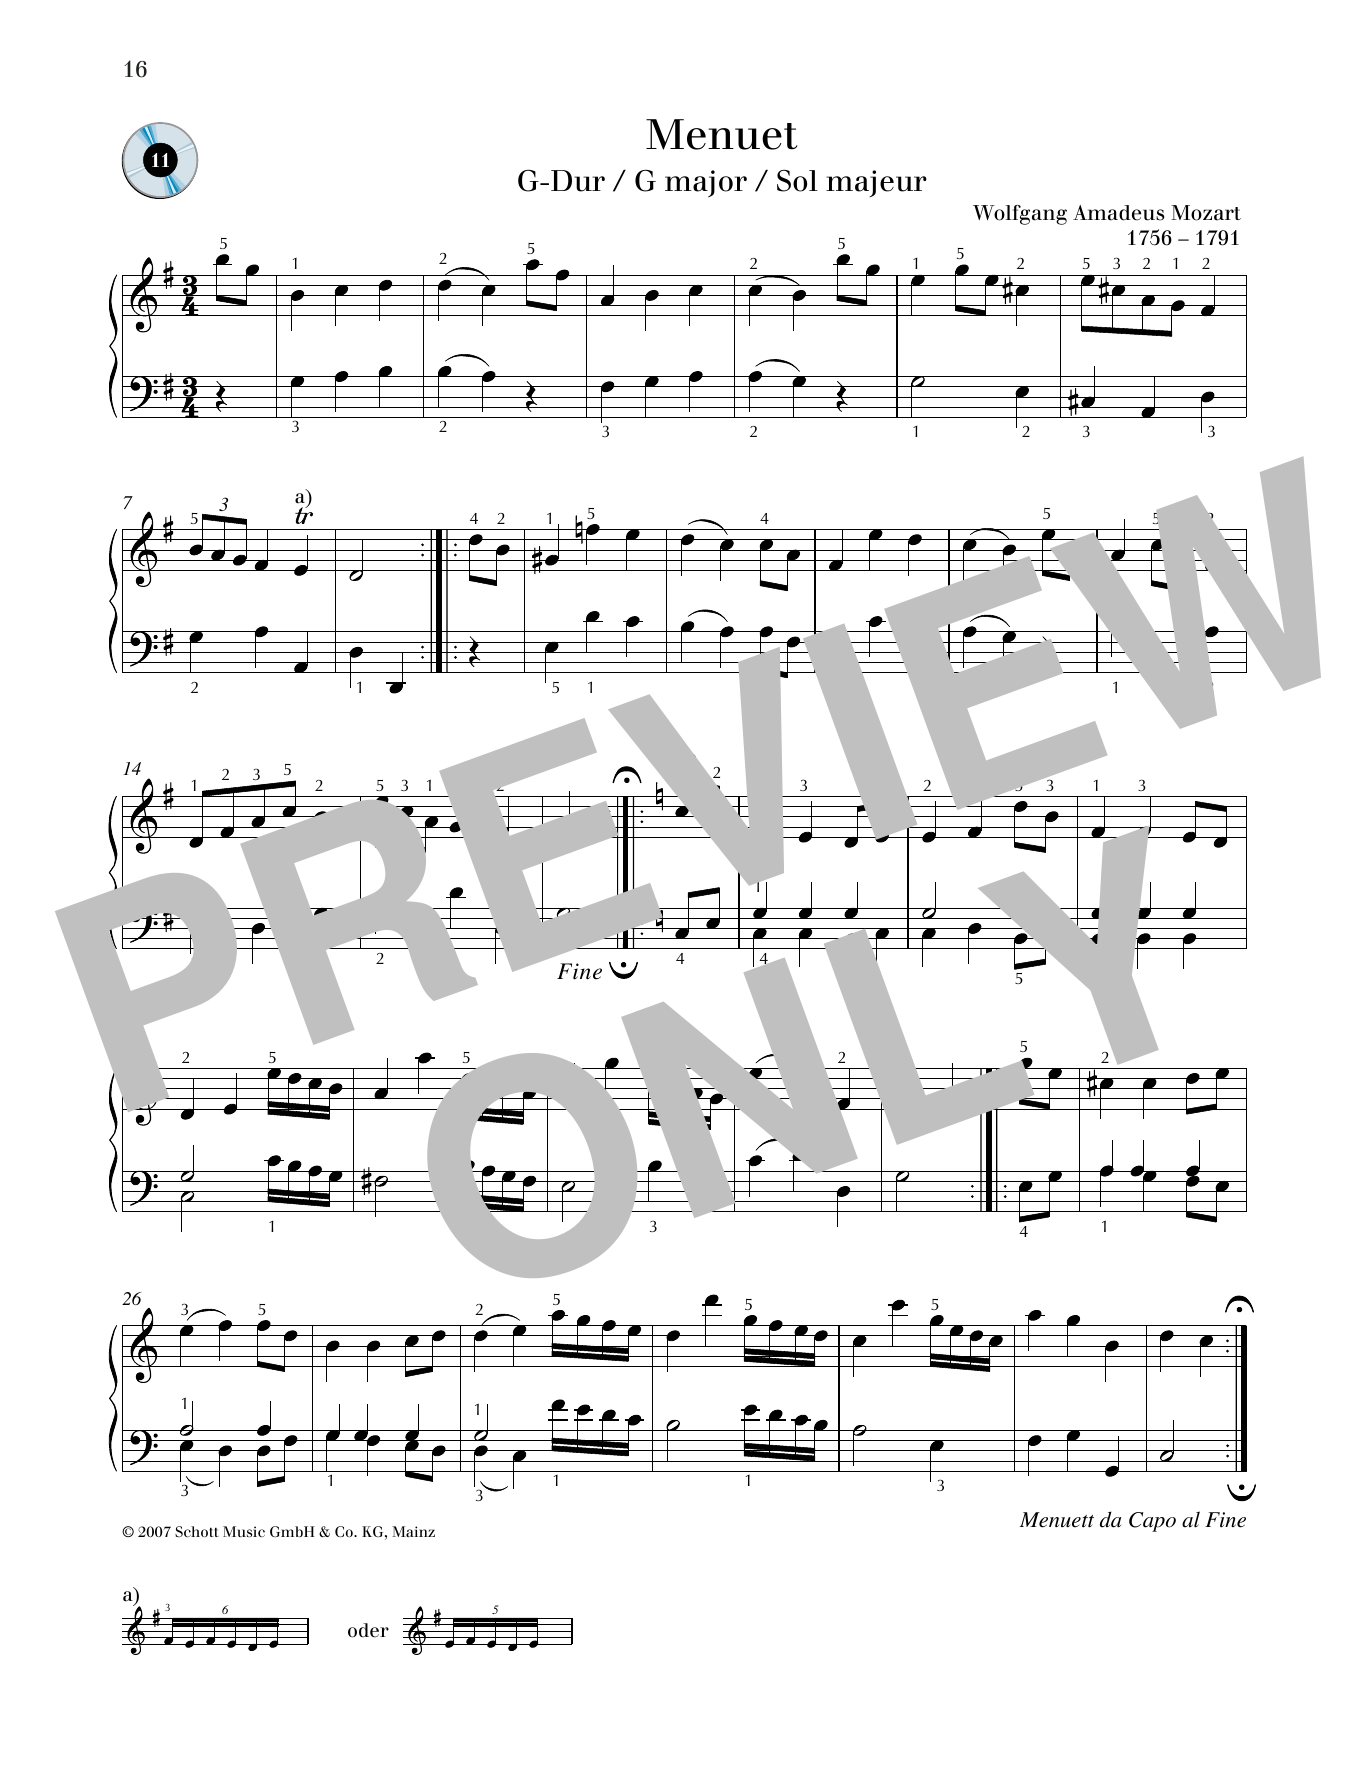 Download Wolfgang Amadeus Mozart Minuet G major Sheet Music